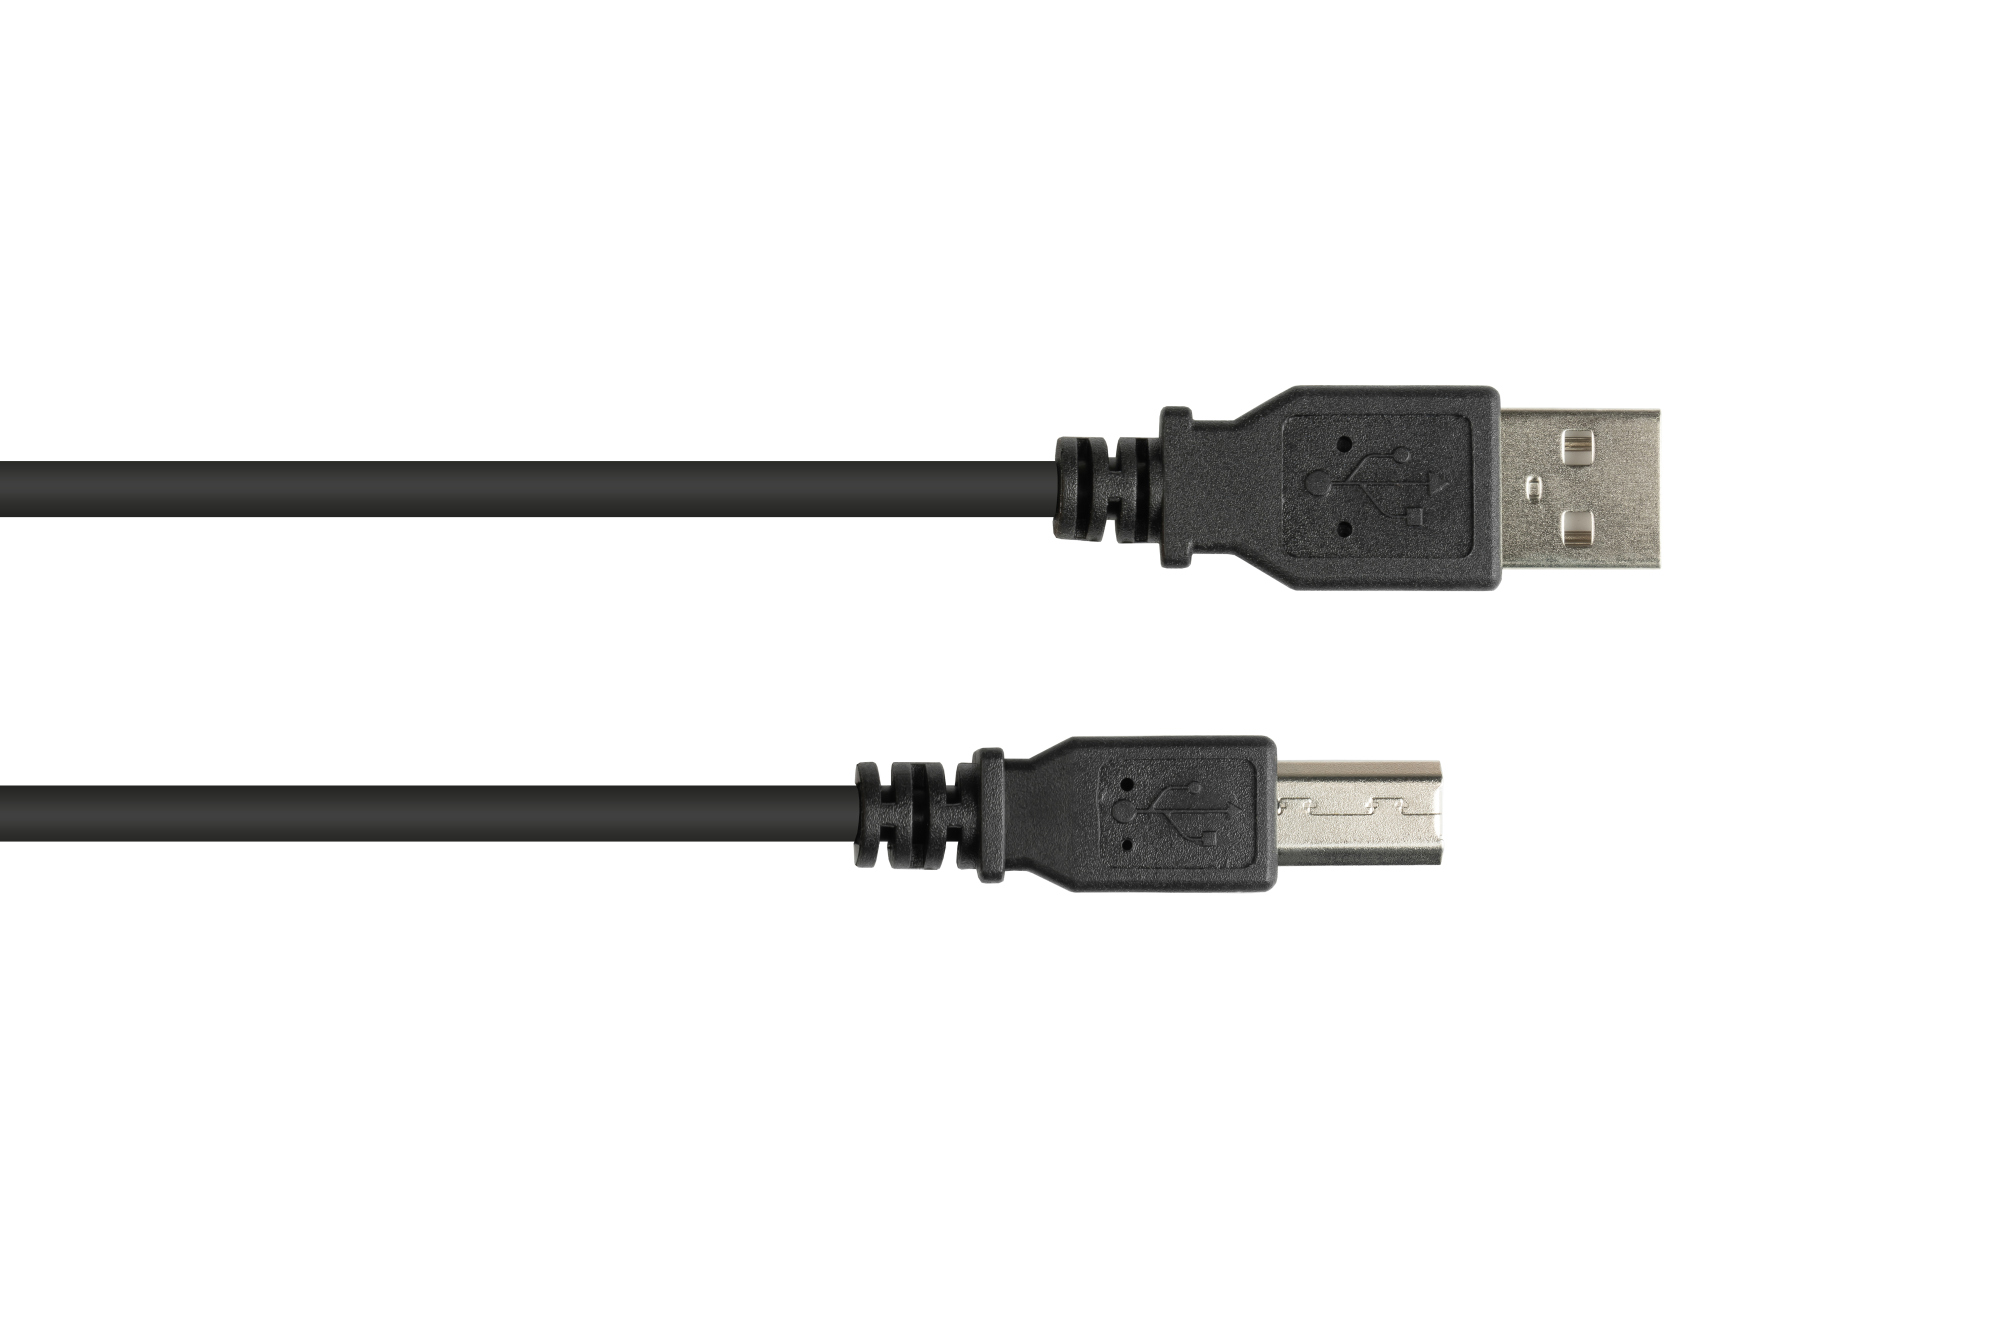 Anschlusskabel USB 2.0 Stecker A an Stecker B, schwarz, 1,8m, Good Connections®